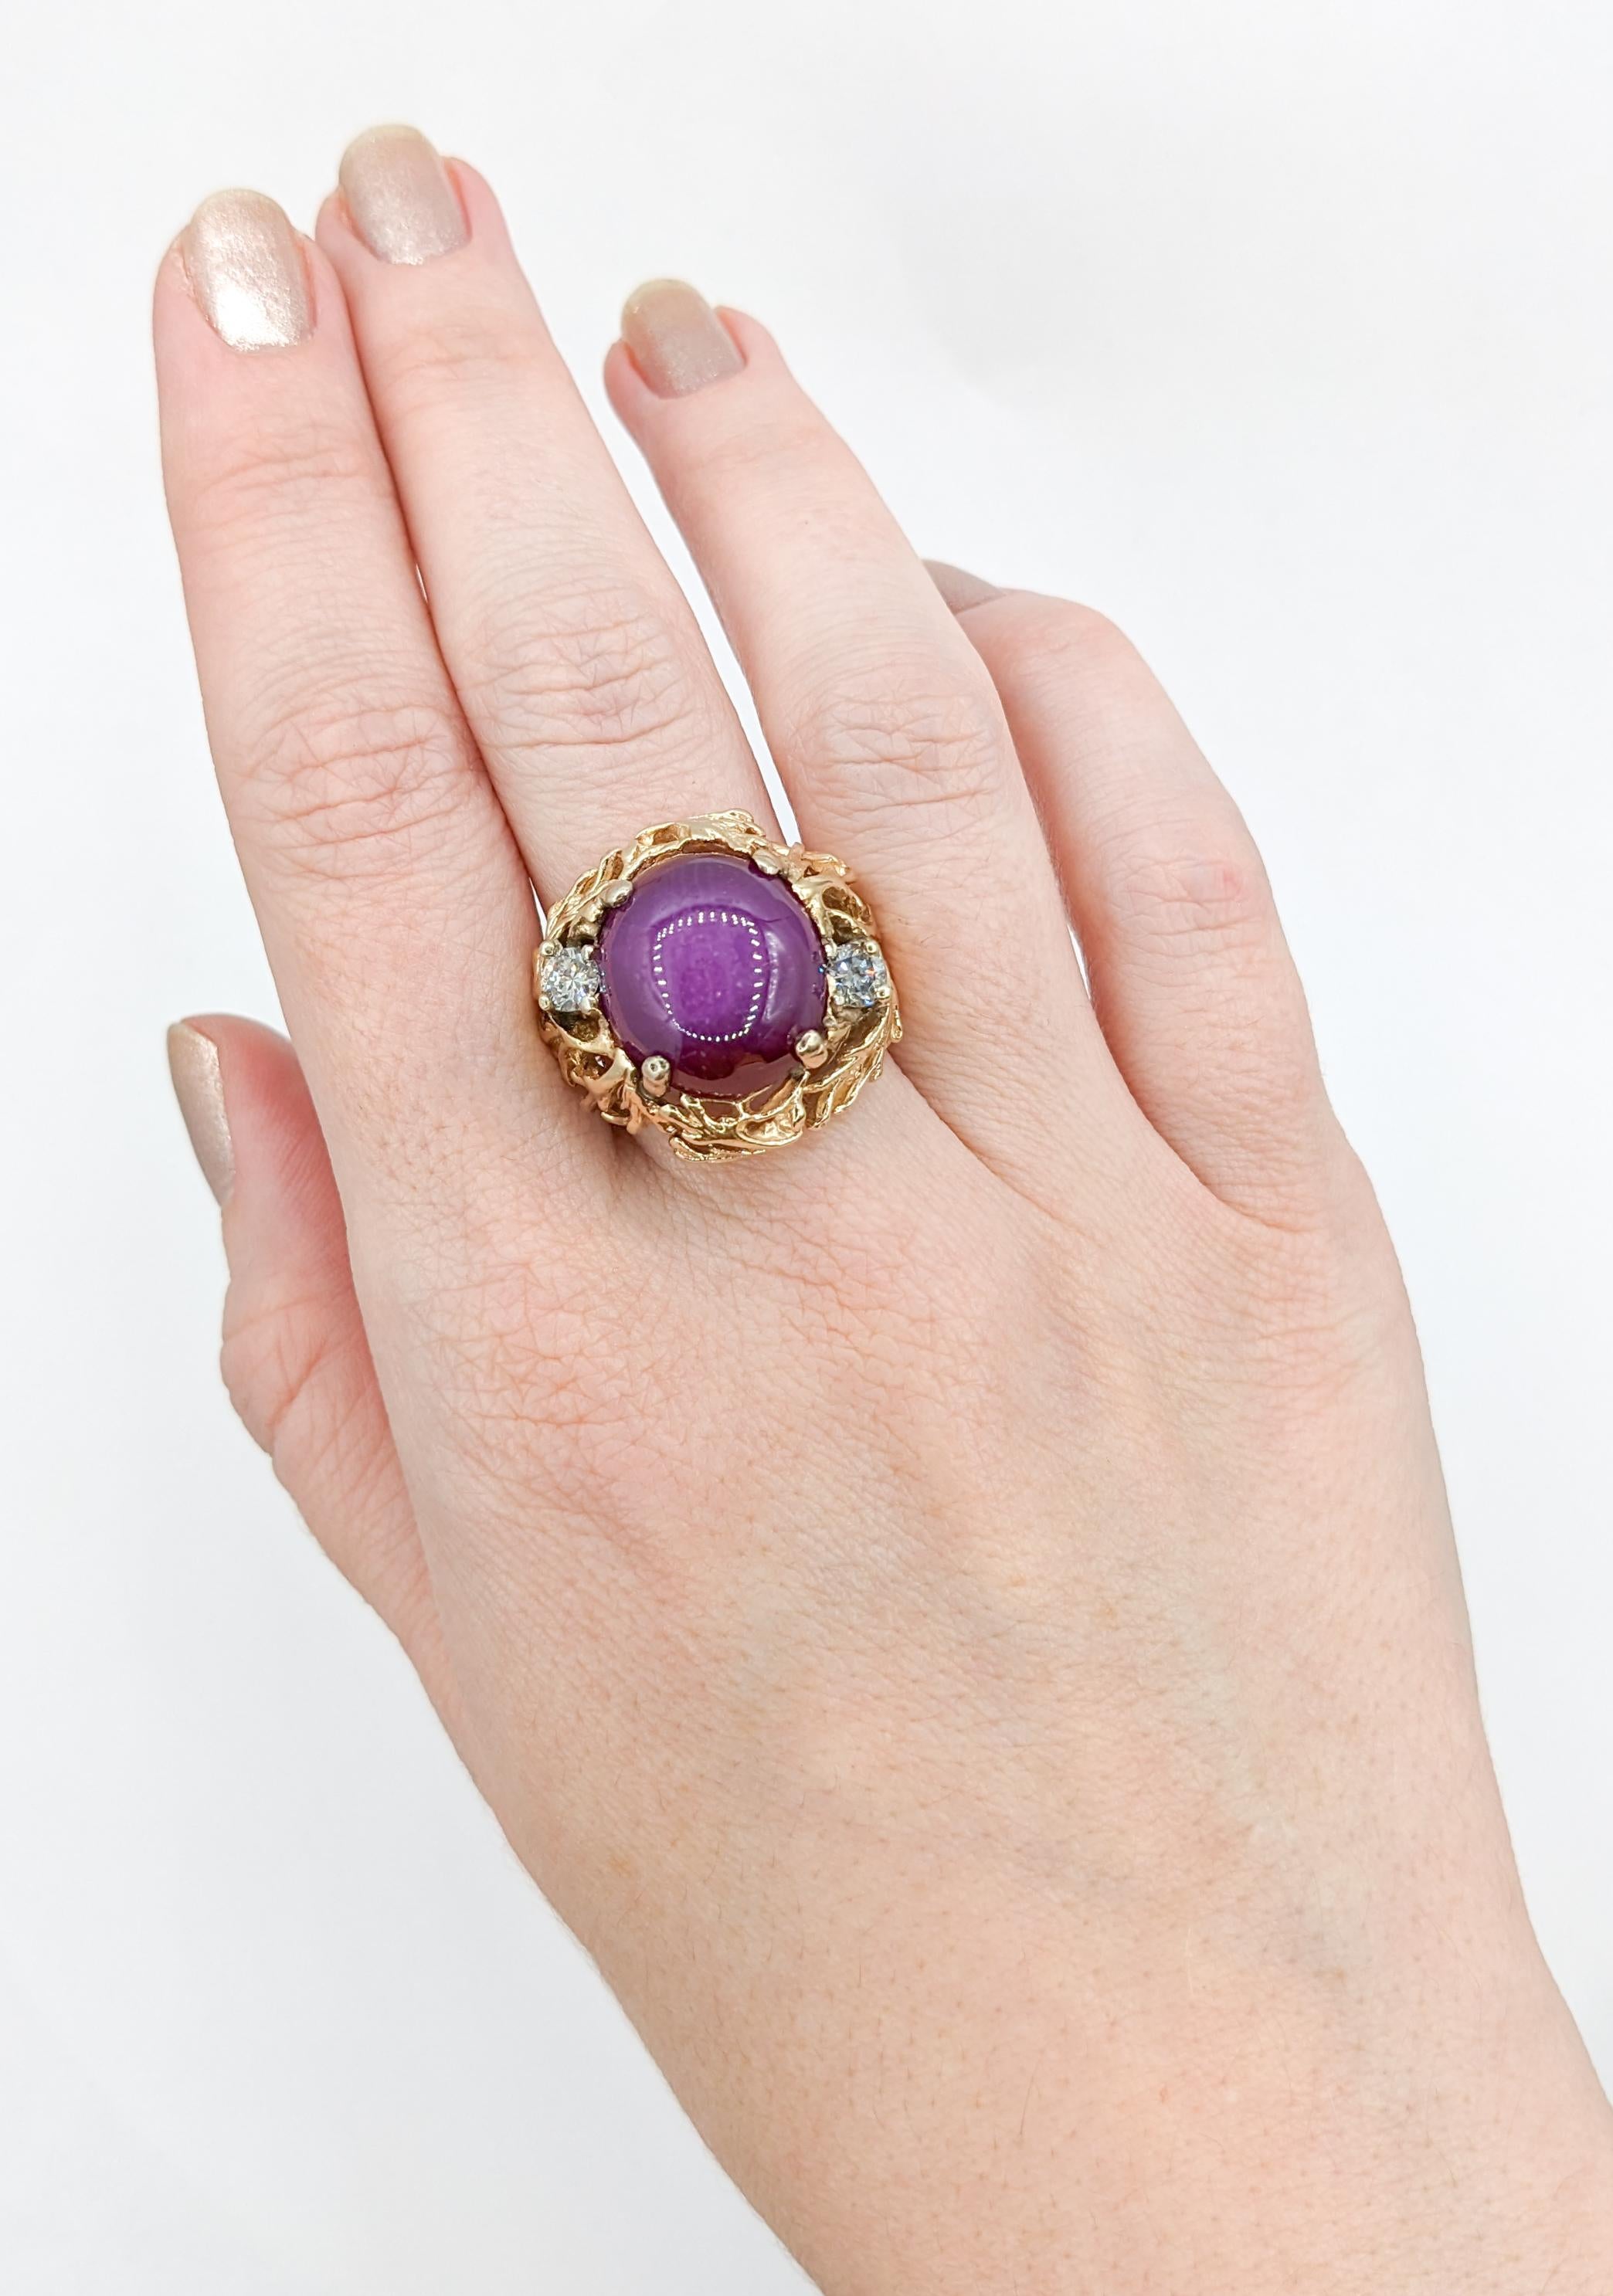 Prächtiger Vintage Lab Star Rubin & Diamant Statement Ring in 14K Gold

Setzen Sie ein Zeichen mit diesem fantastischen Vintage Star Ruby Ring. Der 16x15 mm große Sternrubin aus 14-karätigem Gelbgold mit seinem einzigartigen organischen Design zieht